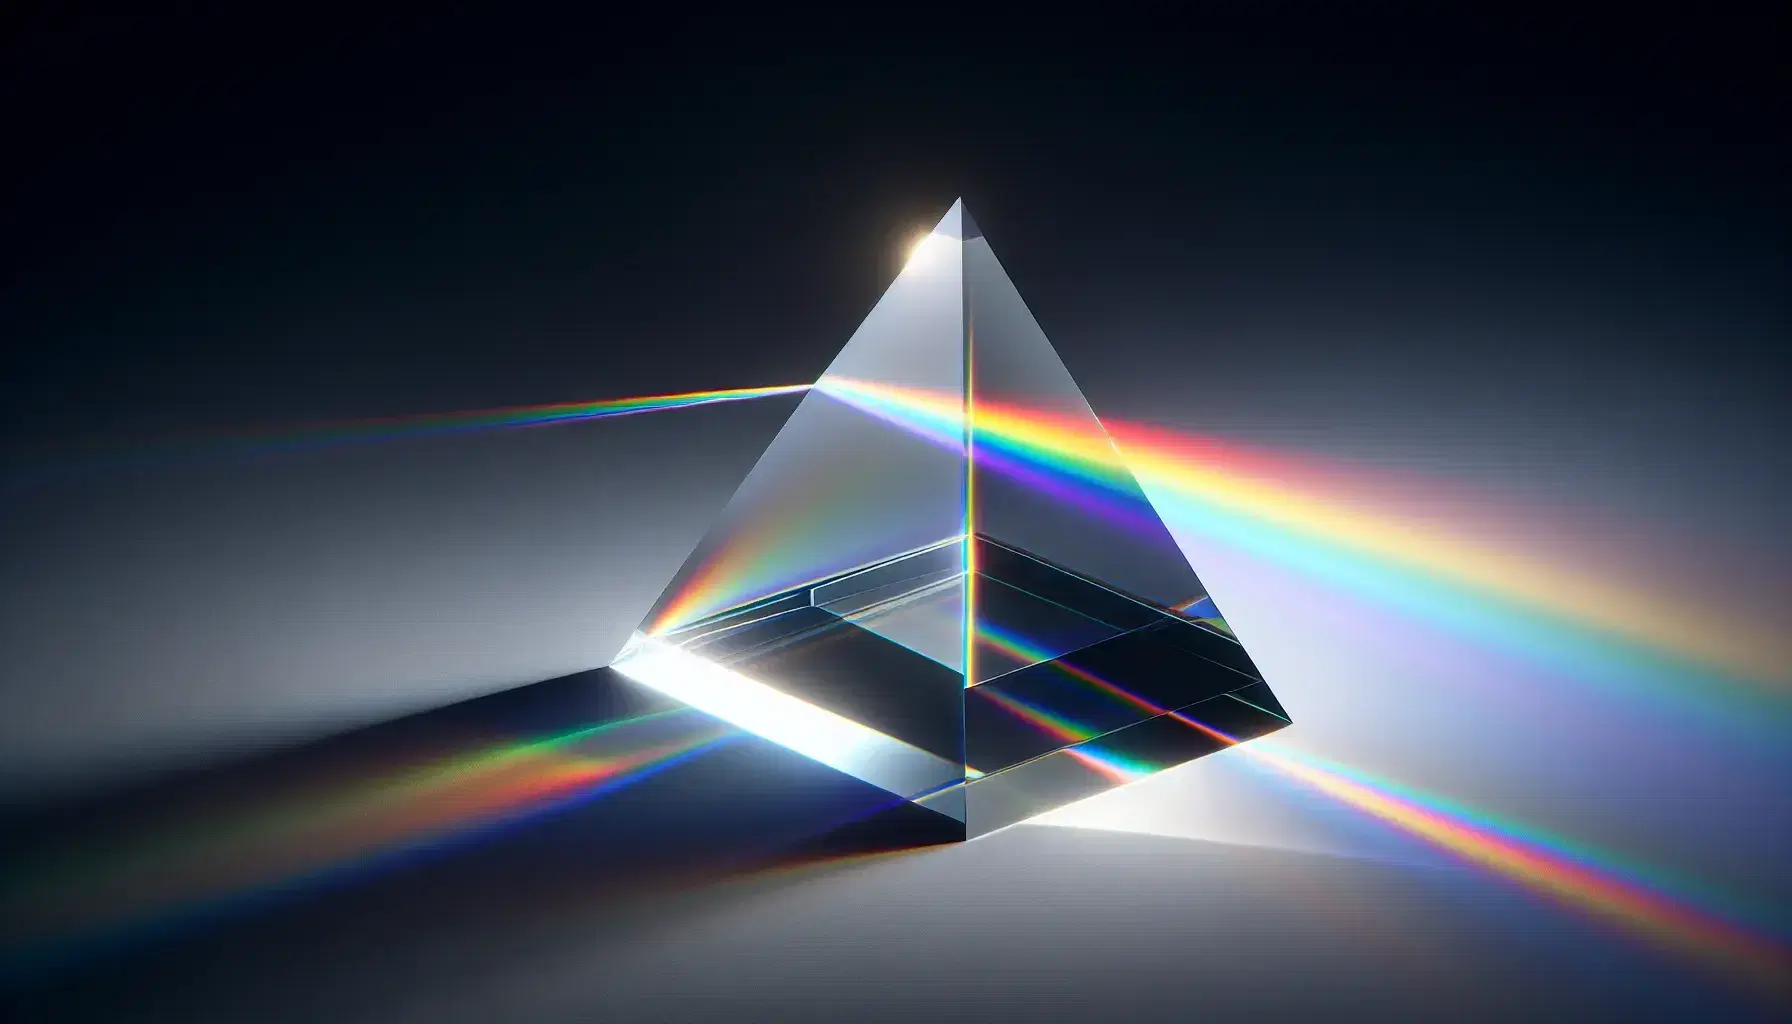 Prisma de vidrio transparente dispersando luz blanca en espectro de colores sobre superficie blanca, mostrando secuencia de arcoíris desde rojo a violeta.